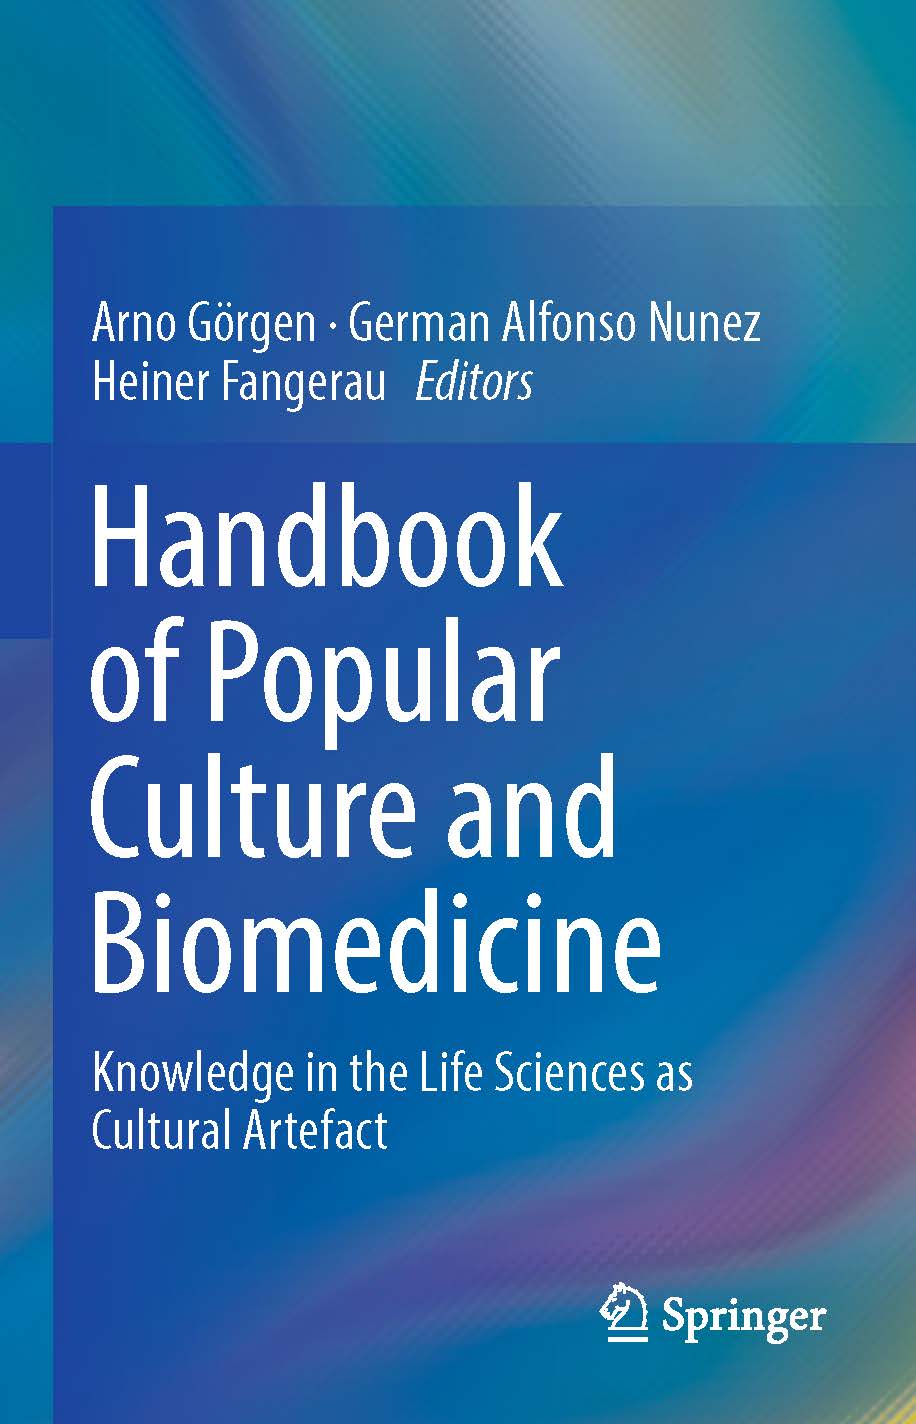 页面提取自－2019_Book_Handbook of Popular Culture and Biomedicine.jpg